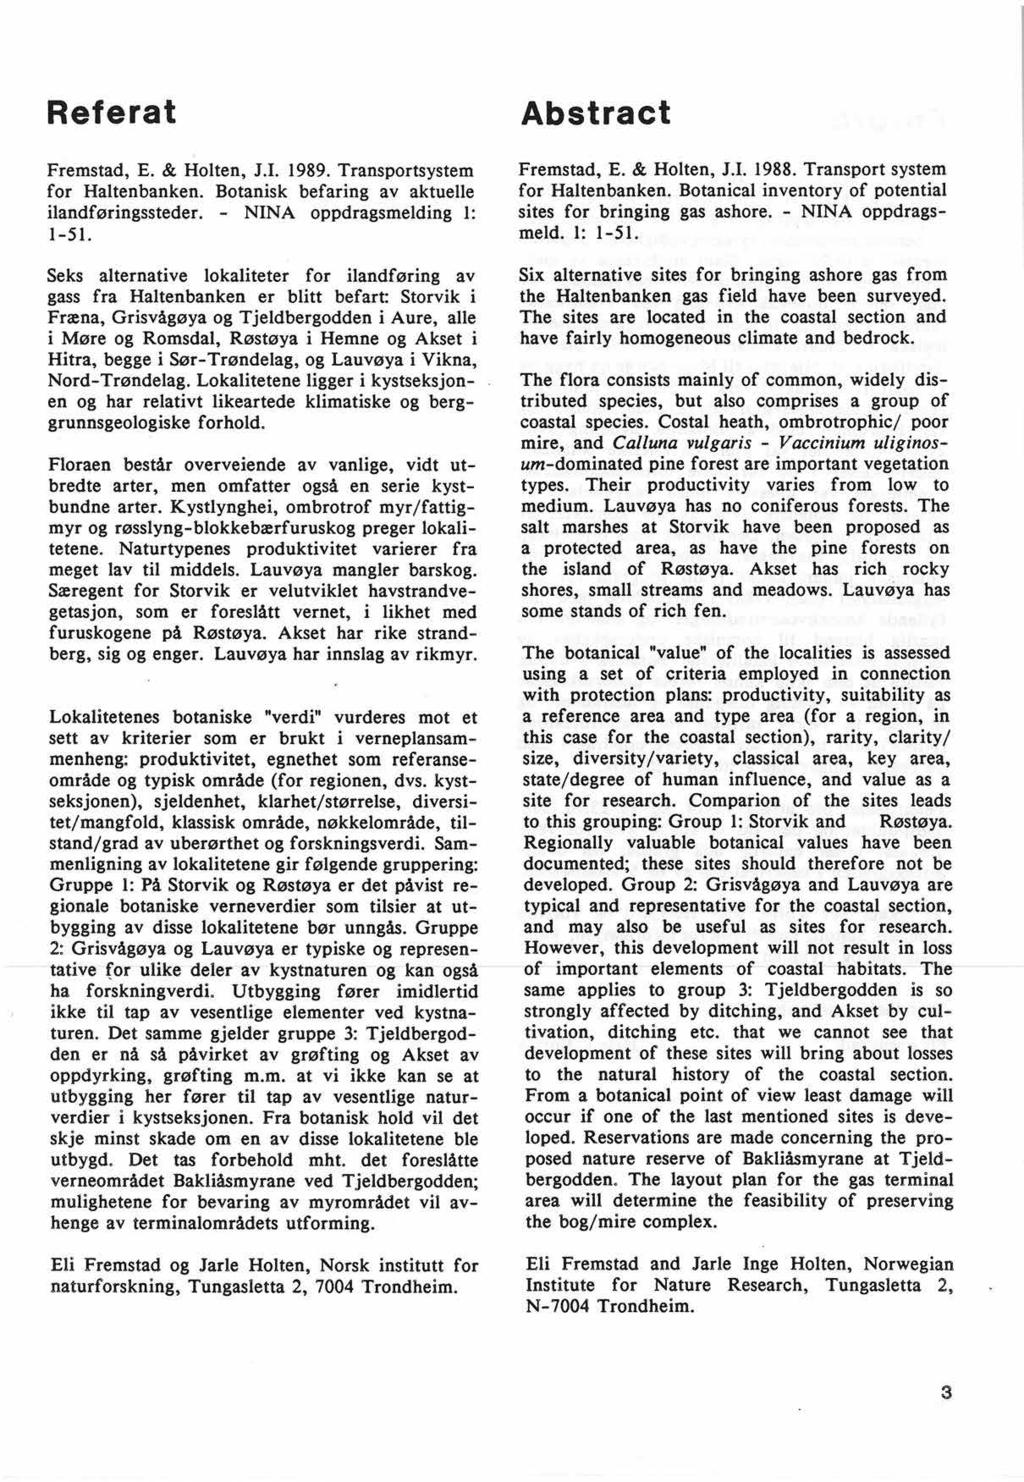 Referat Fremstad, E. & Holten, J.I. 1989. Transportsystem for Haltenbanken. Botanisk befaring av aktuelle ilandføringssteder. NINA oppdragsmelding 1: 1-51.